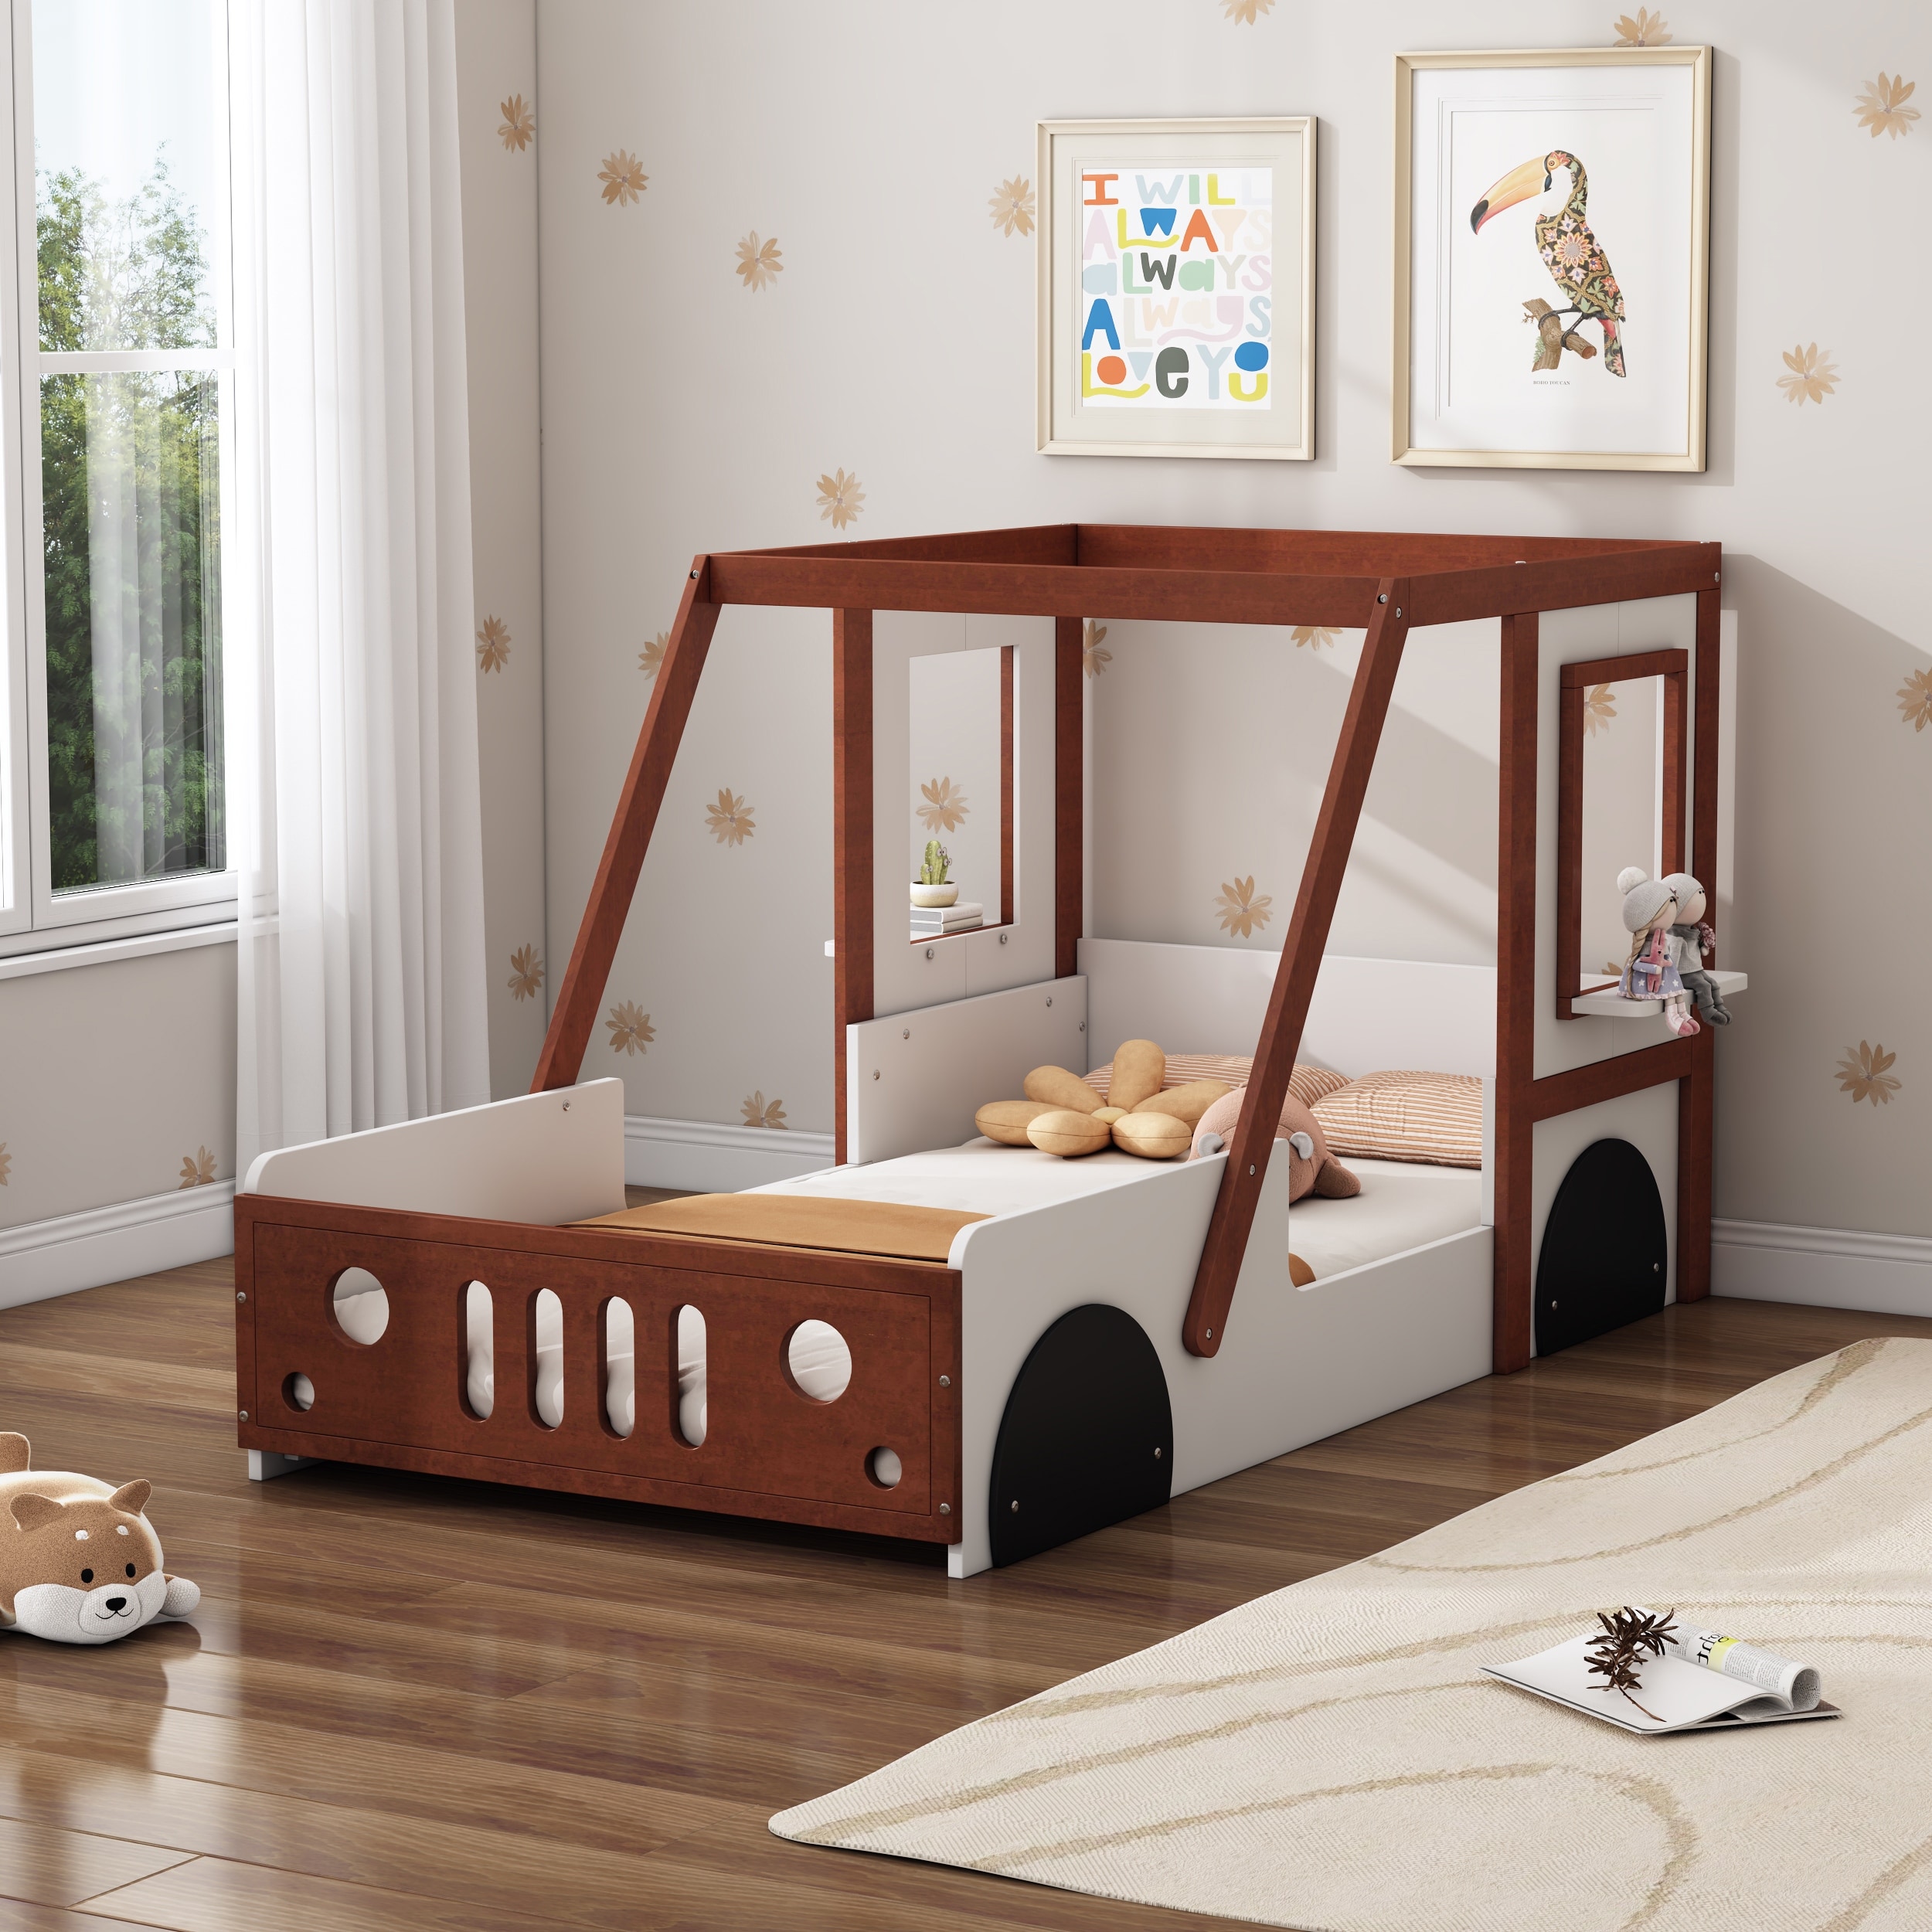 Twin Size Car-Shaped Platform Bed, Wooden Kids Floor Bed Frame